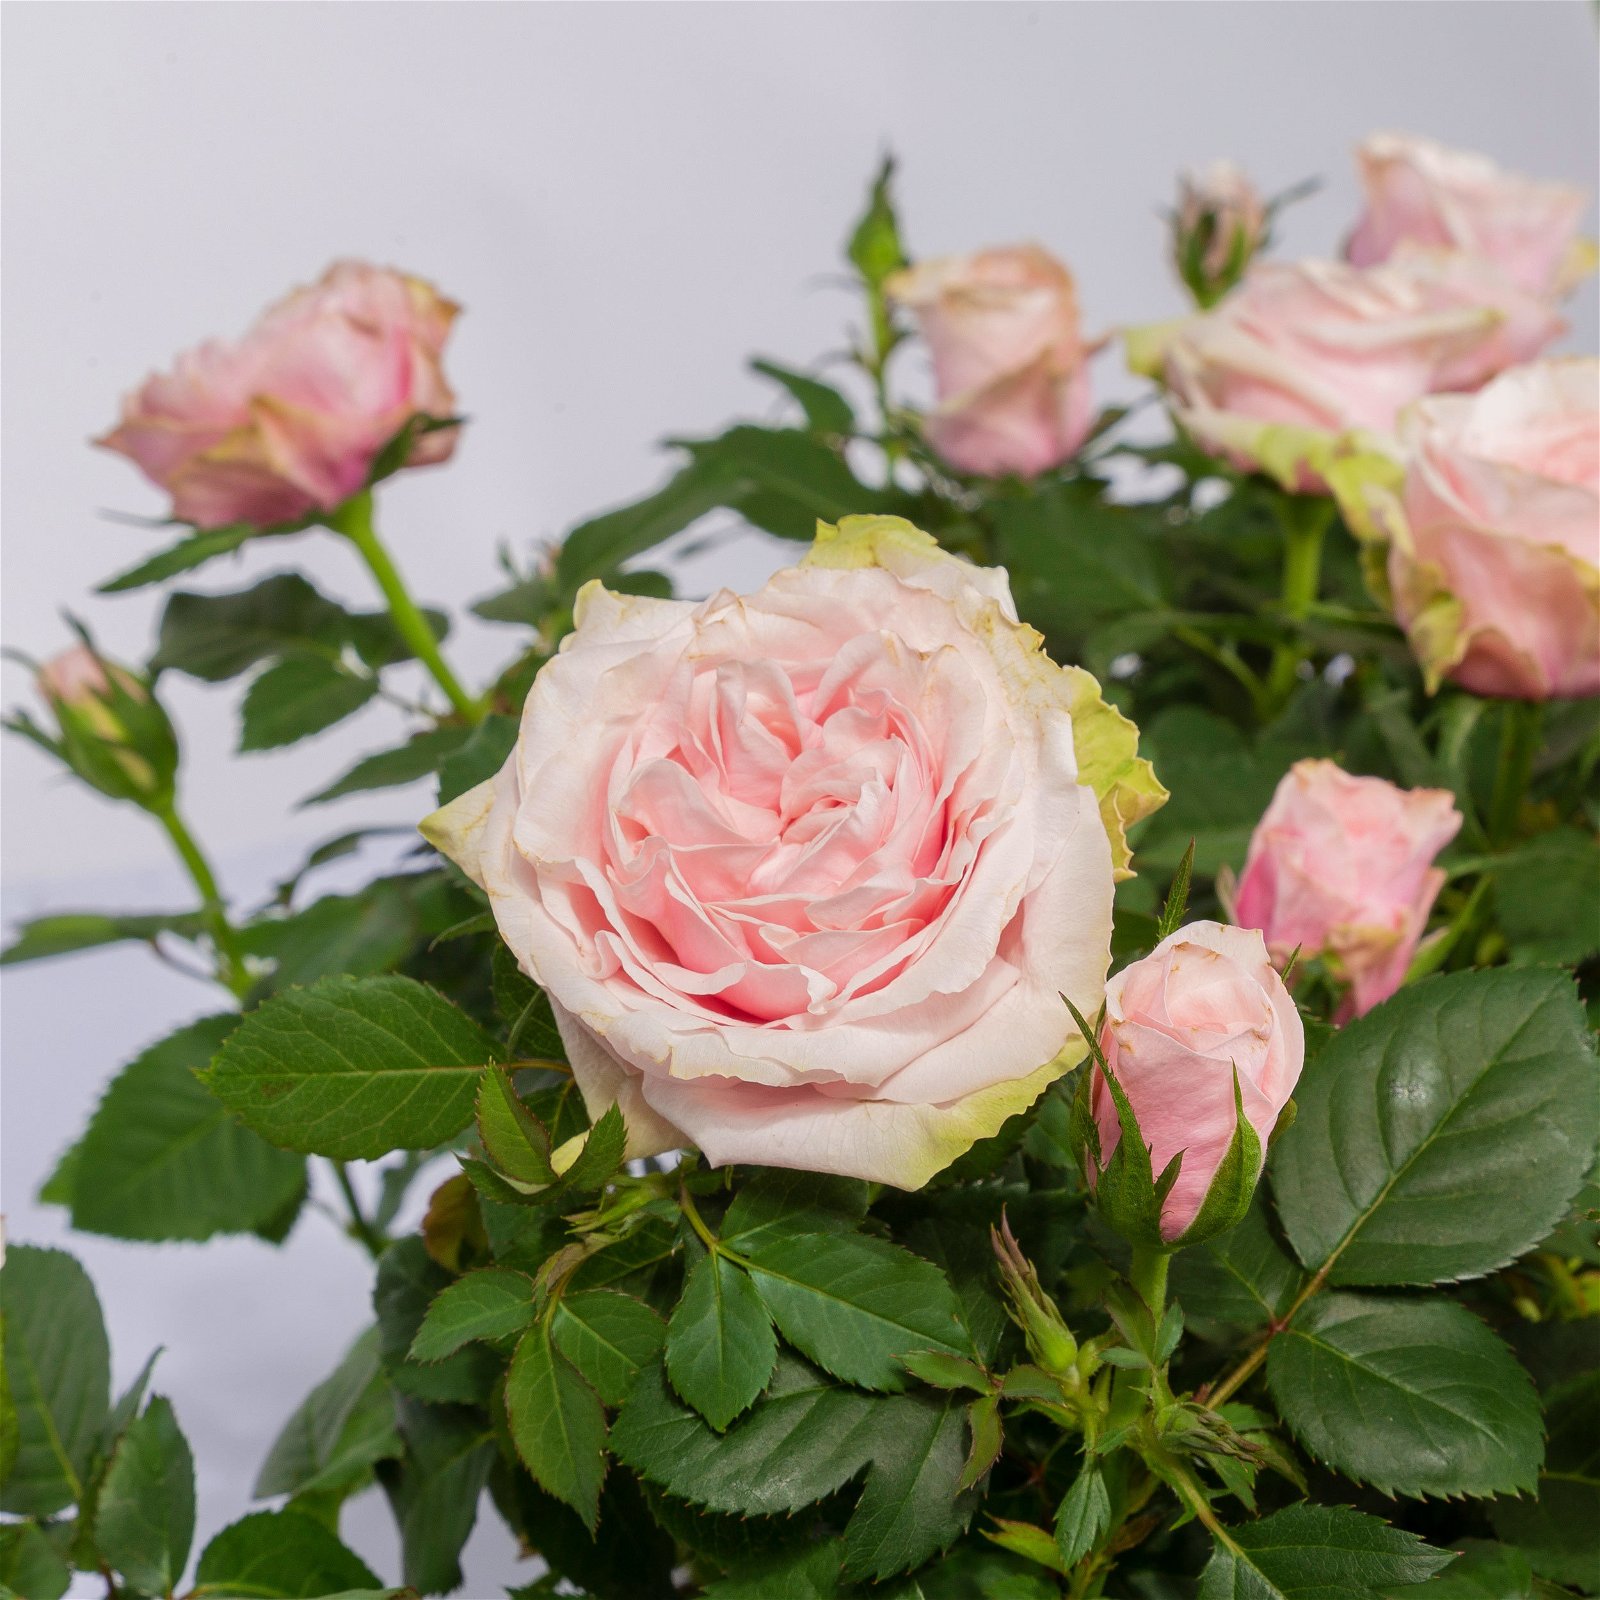 Rose Patio, rosa,  Topf-Ø 13 cm, 6er-Set